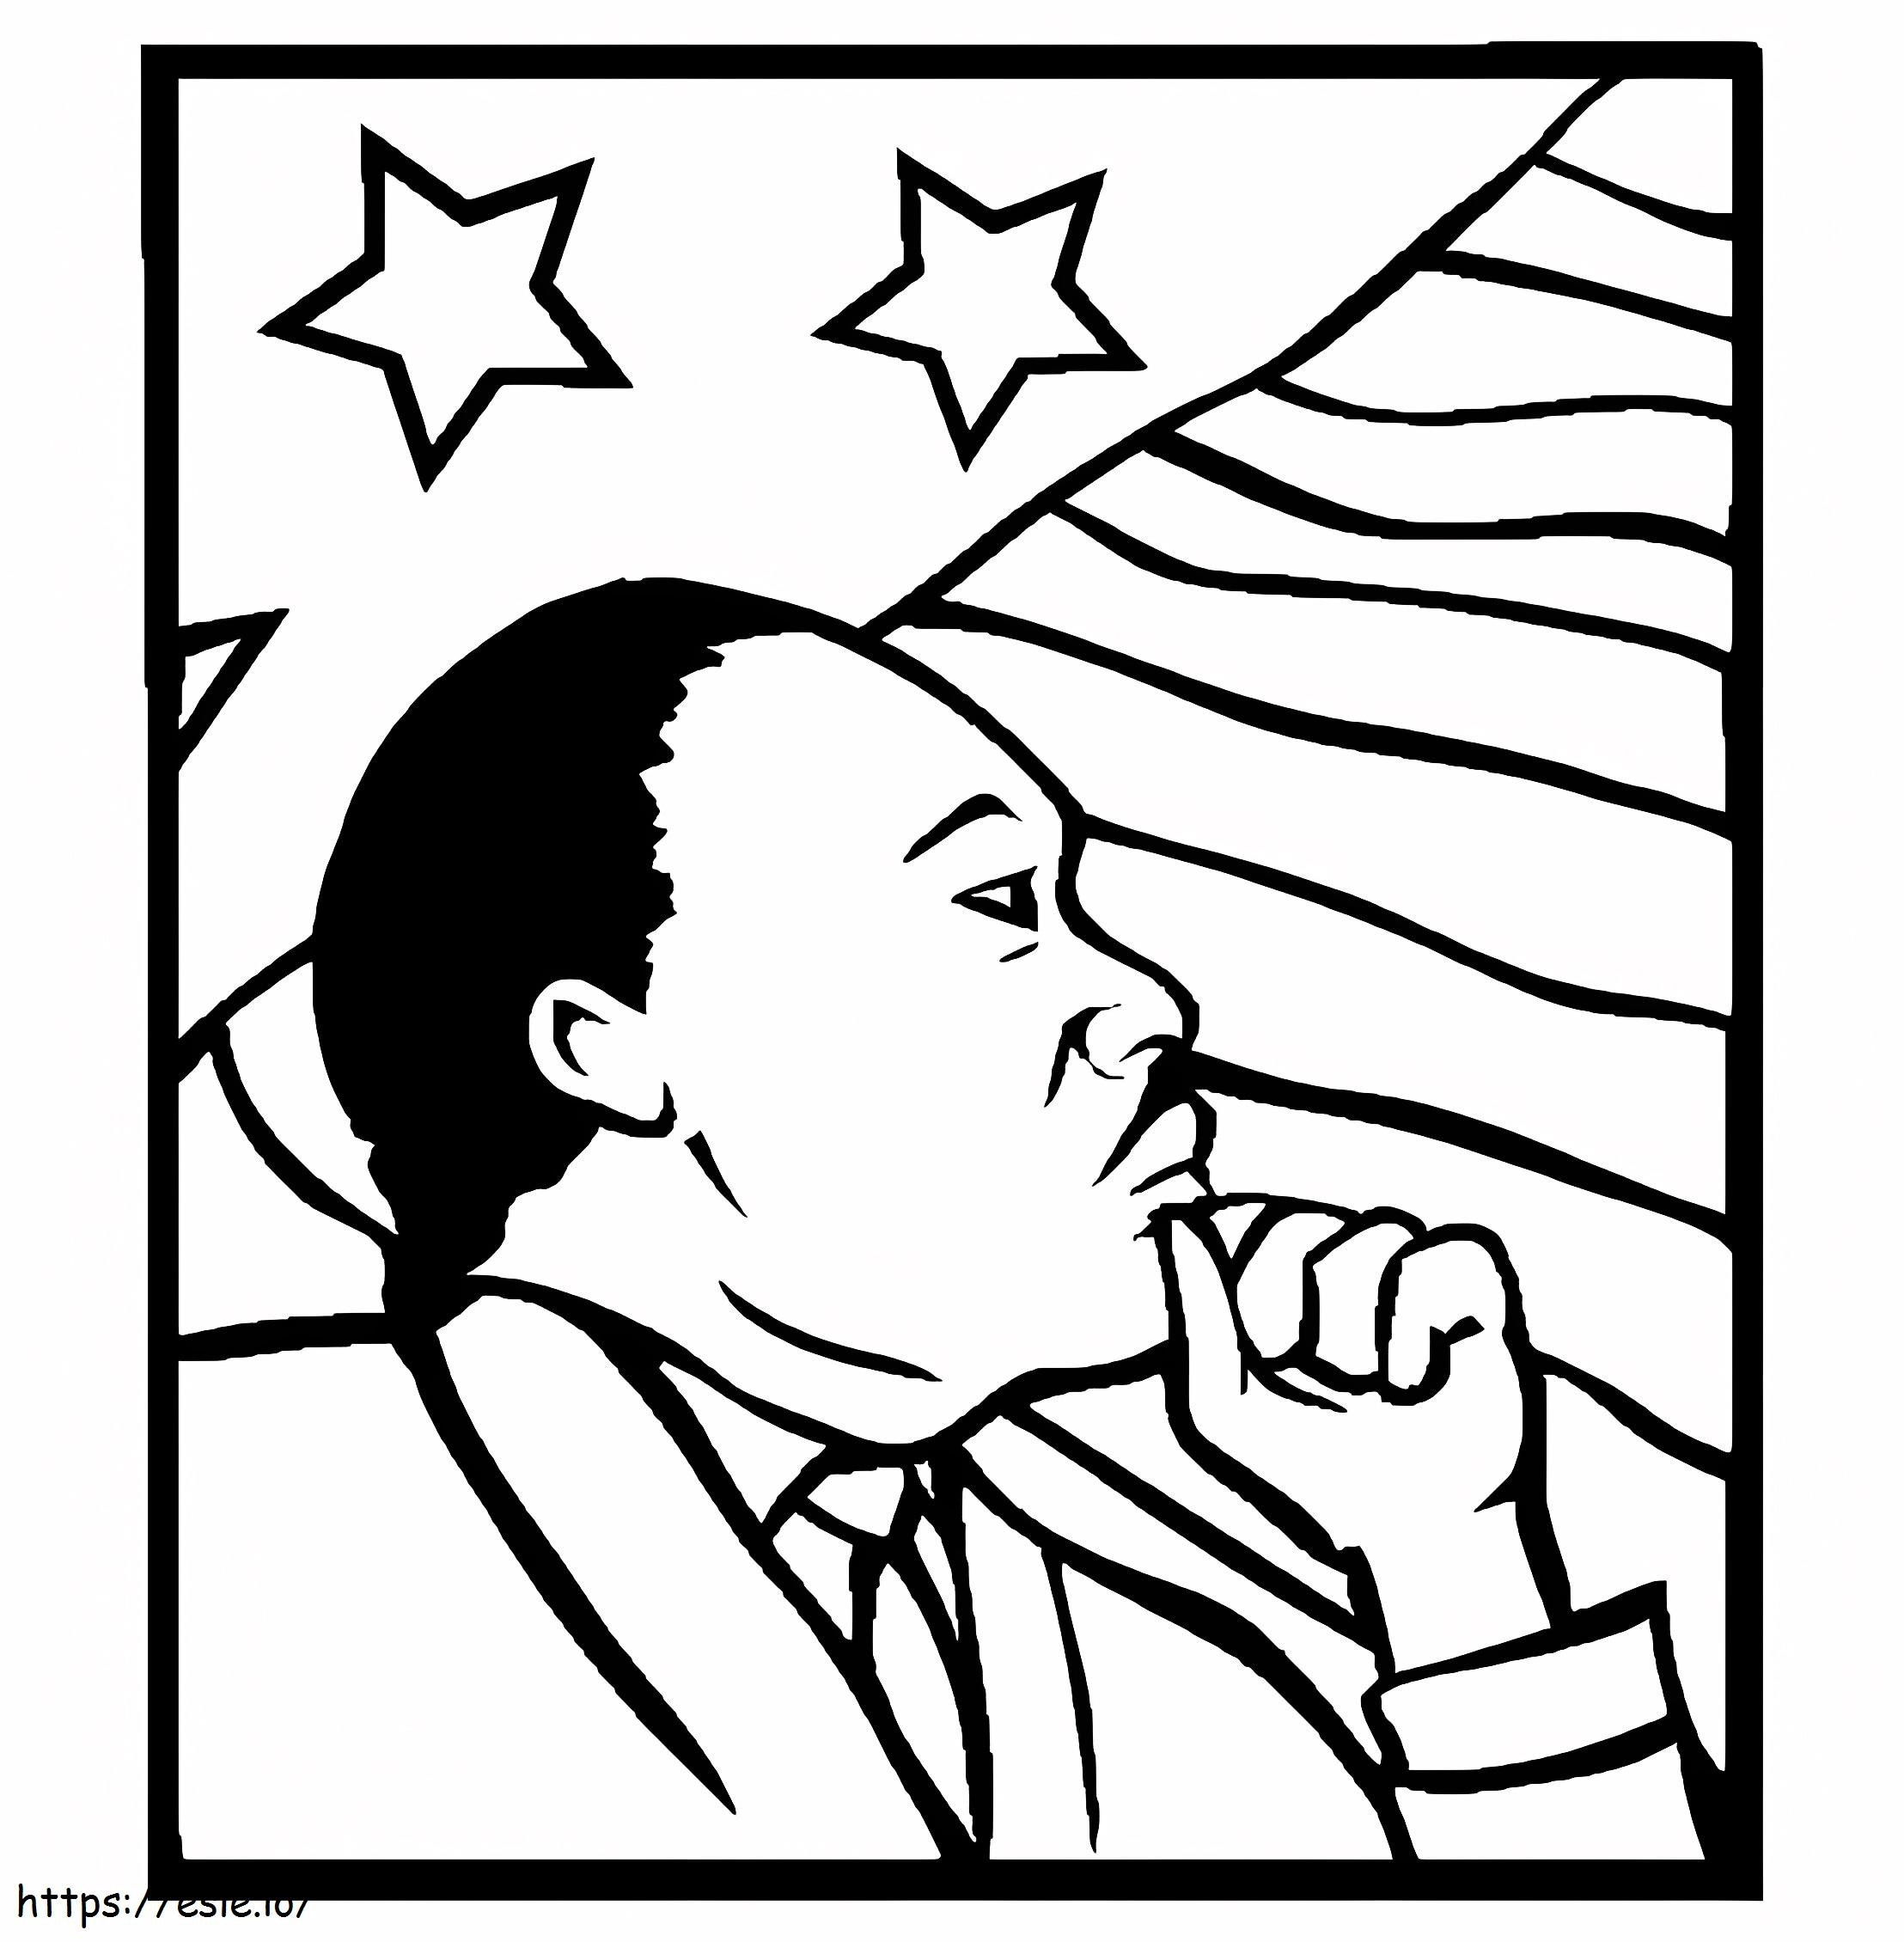 Martin Luther King Jr. 1 ausmalbilder